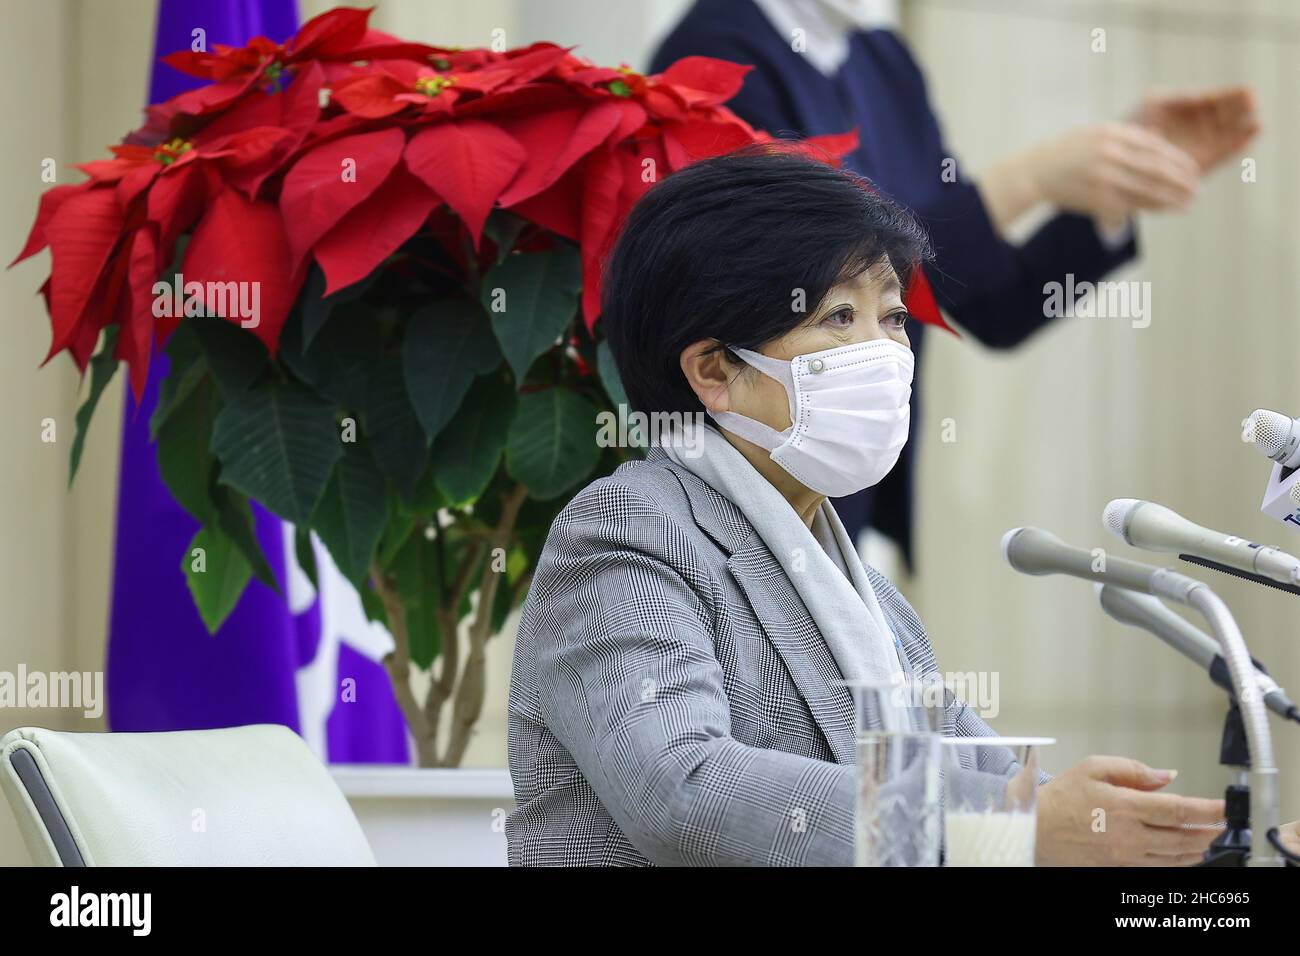 La Gobernadora de Tokio Yuriko Koike asiste a su conferencia de prensa  final del año en Nochebuena, con el telón de fondo de la flor navideña de  diciembre, la poinsettia. El 24